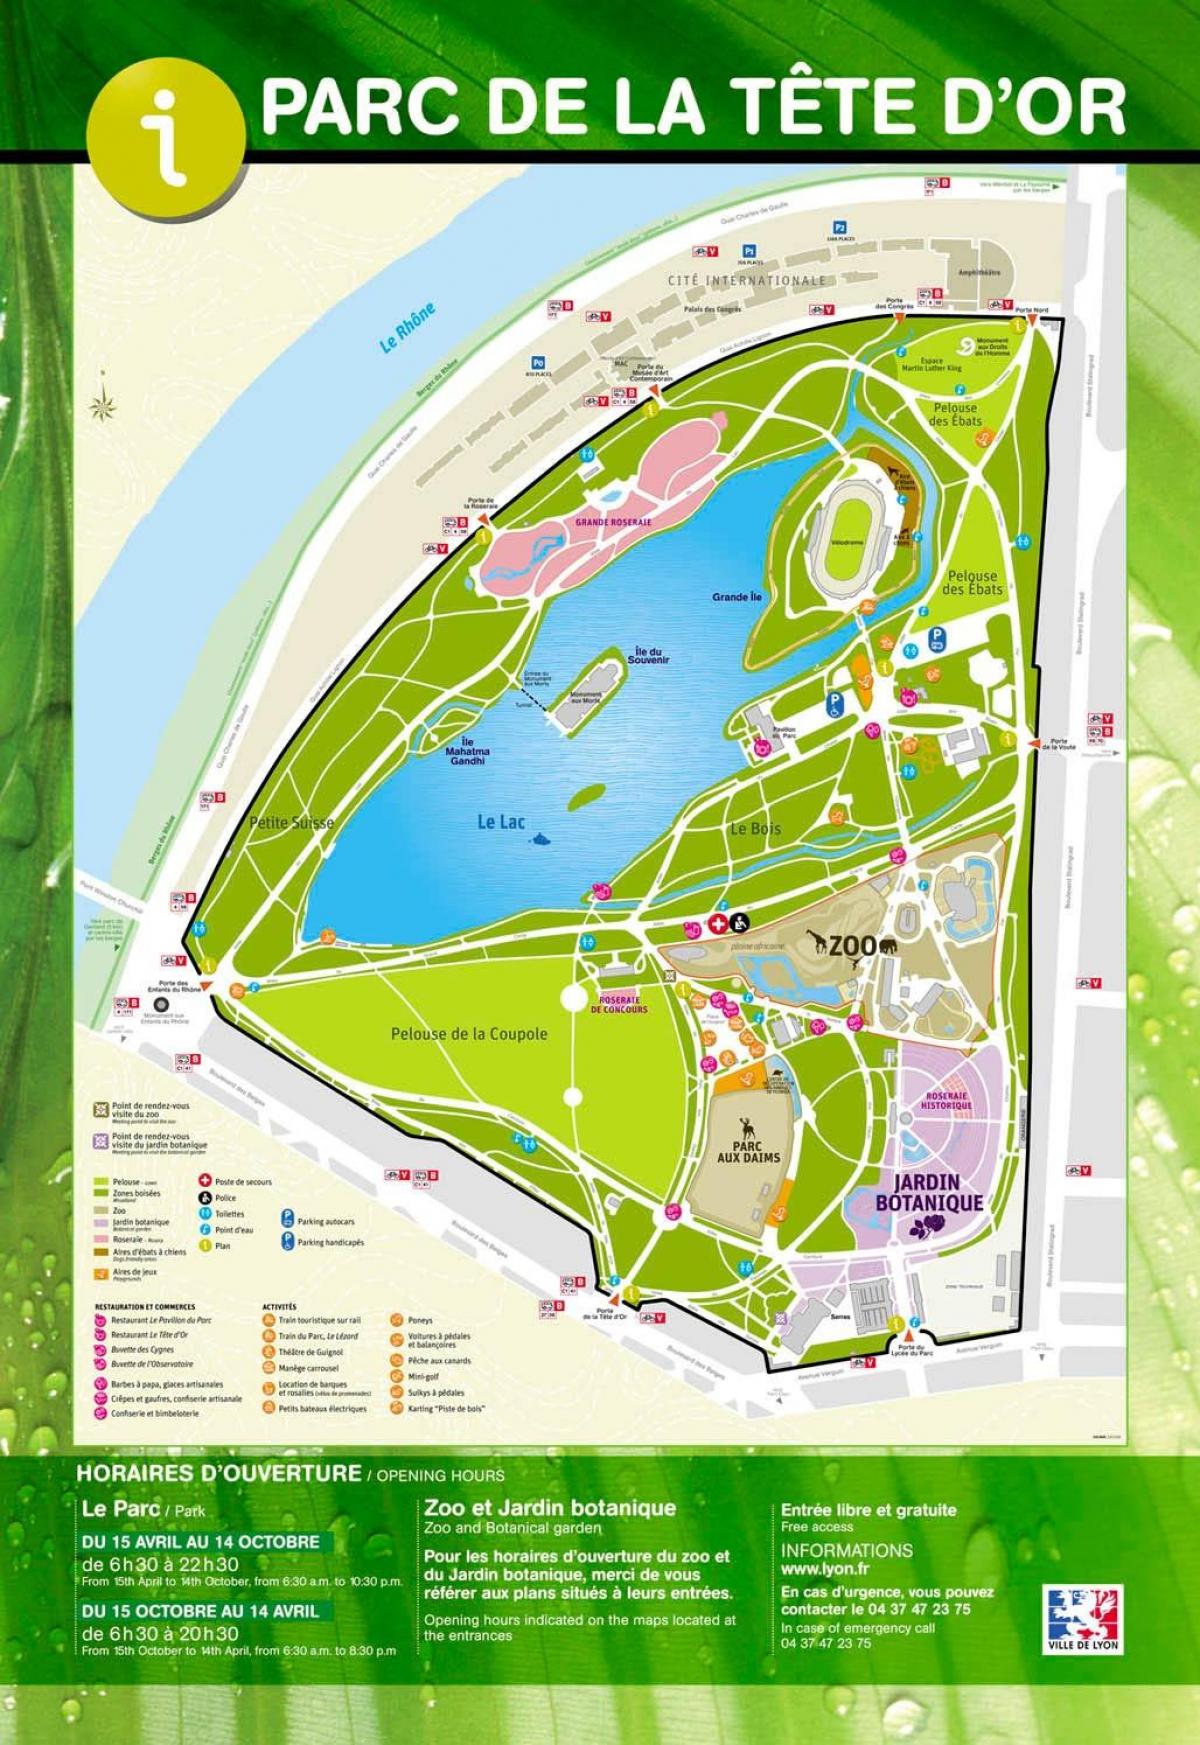 map of Lyon garden